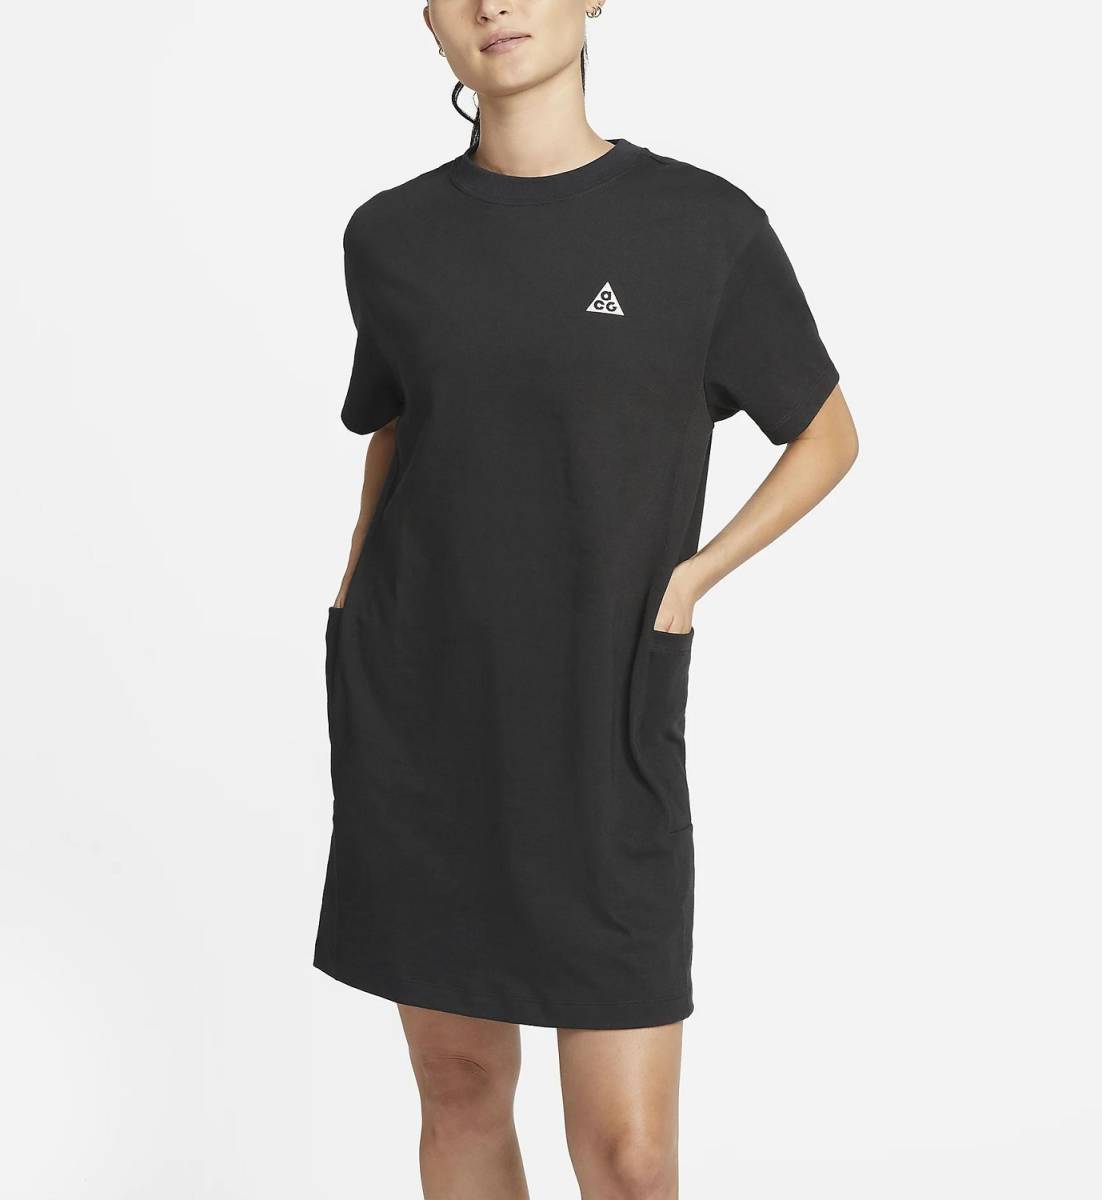  Nike ACG женский dry Fit ADV футболка платье M размер обычная цена 9680 иен черный чёрный уличный короткий рукав One-piece туника 